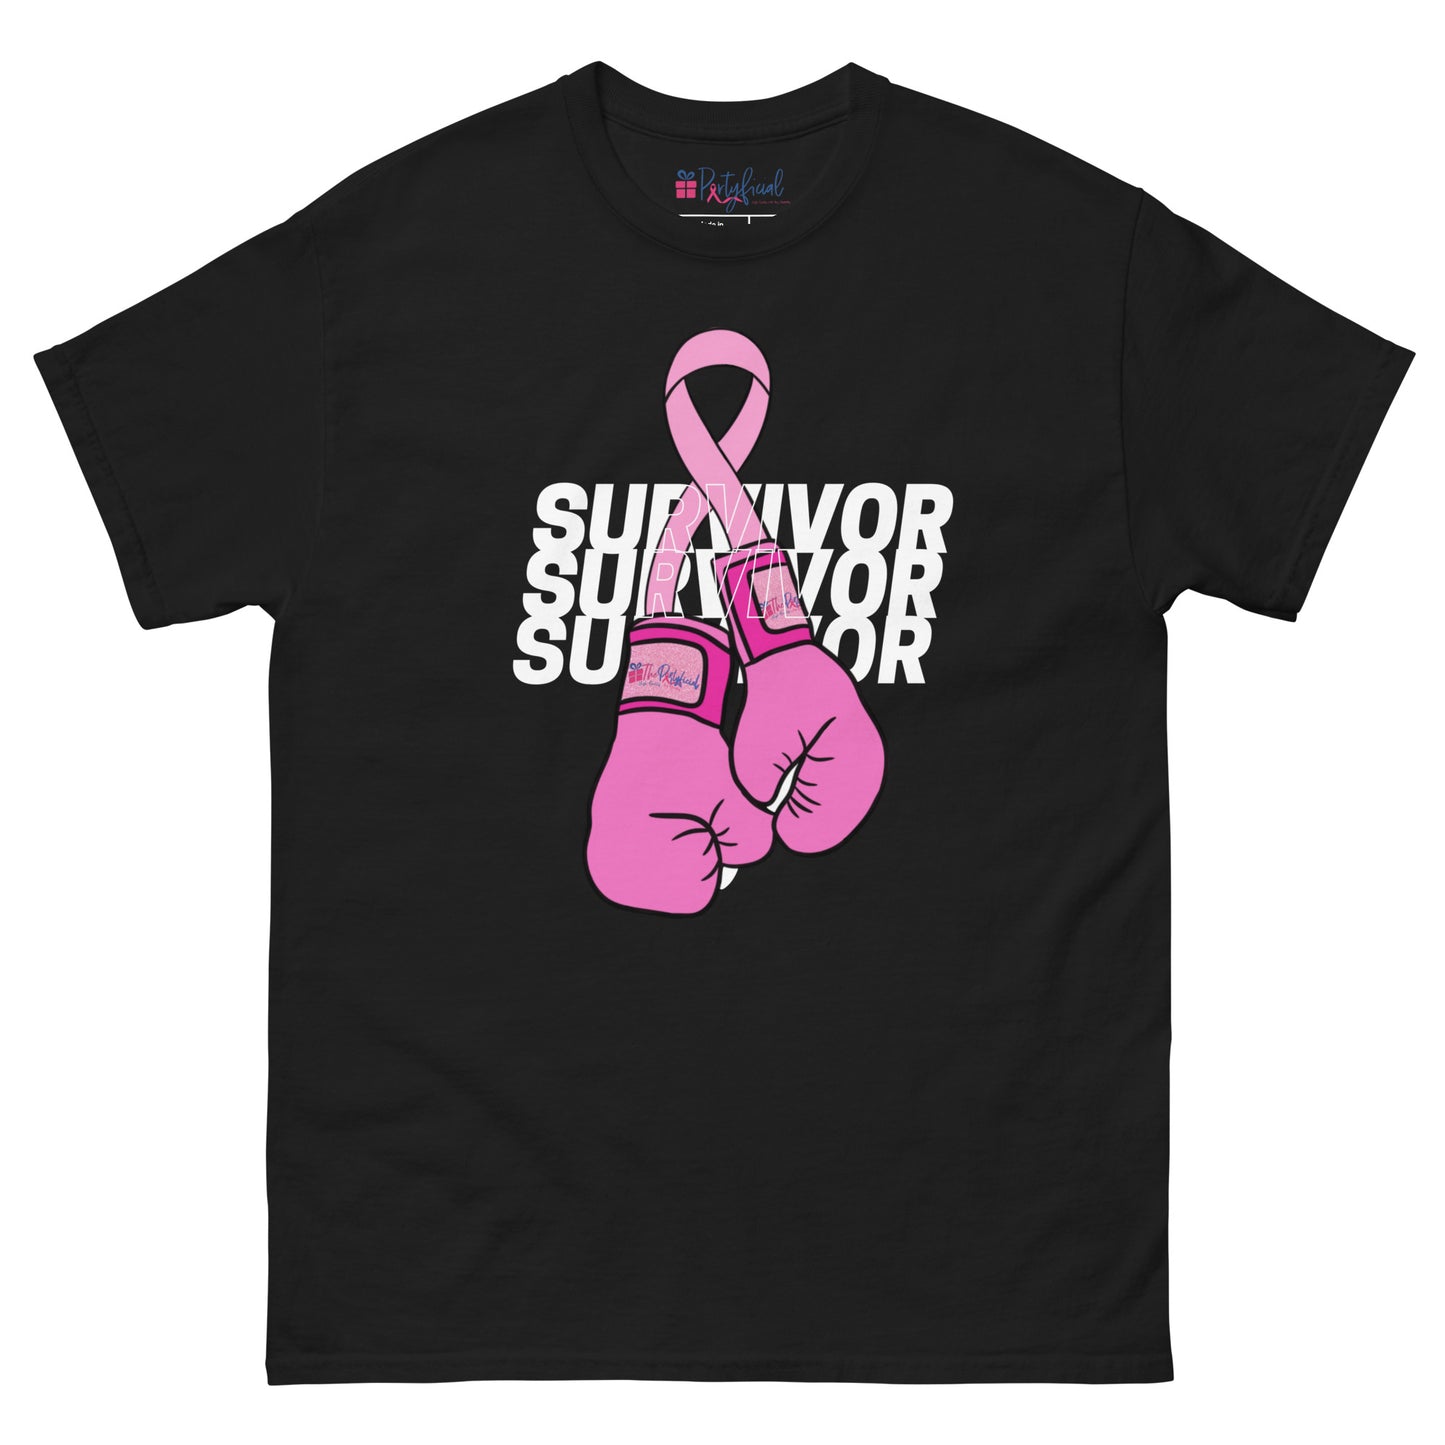 Breast Cancer Survivor T-Shirt